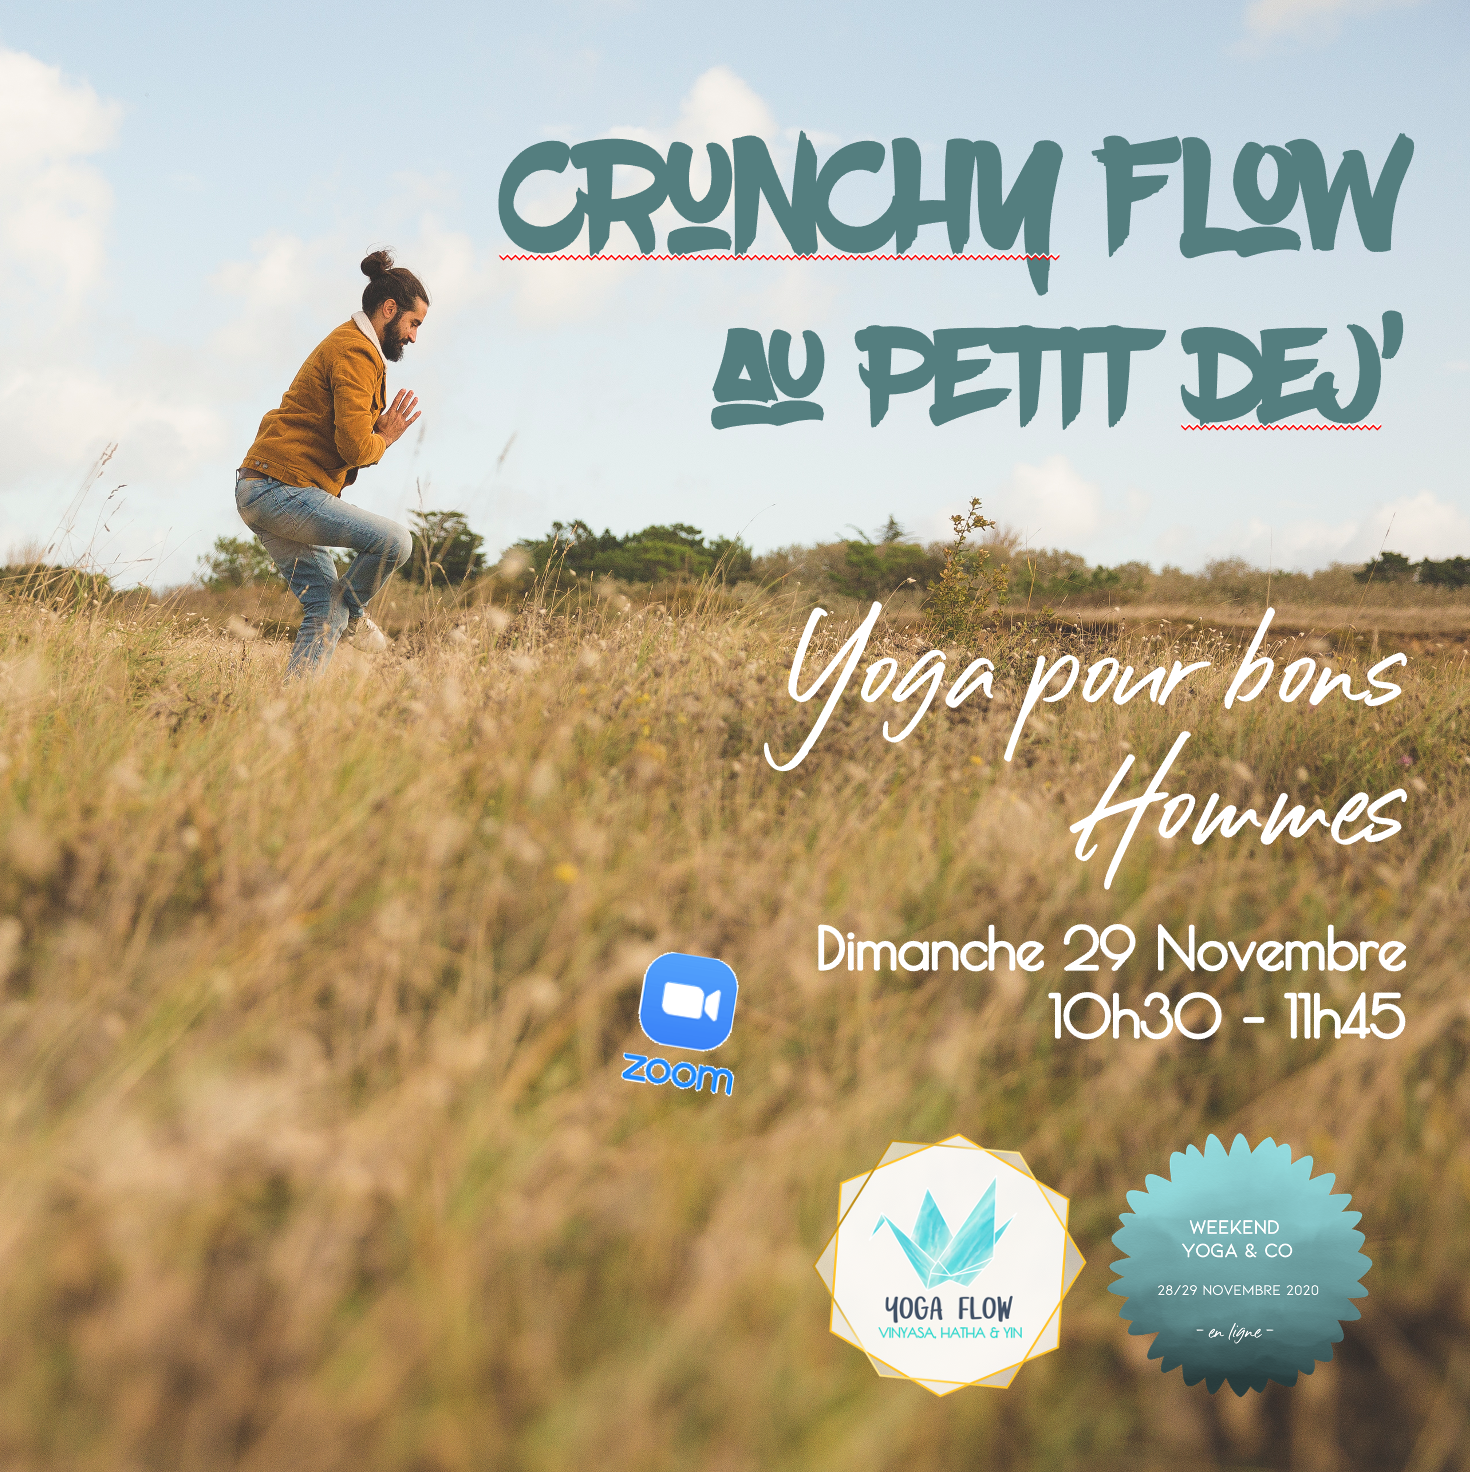 Affiche atelier Crunchy Flow Vinyasa yoga pour hommes 29 novembre 2020